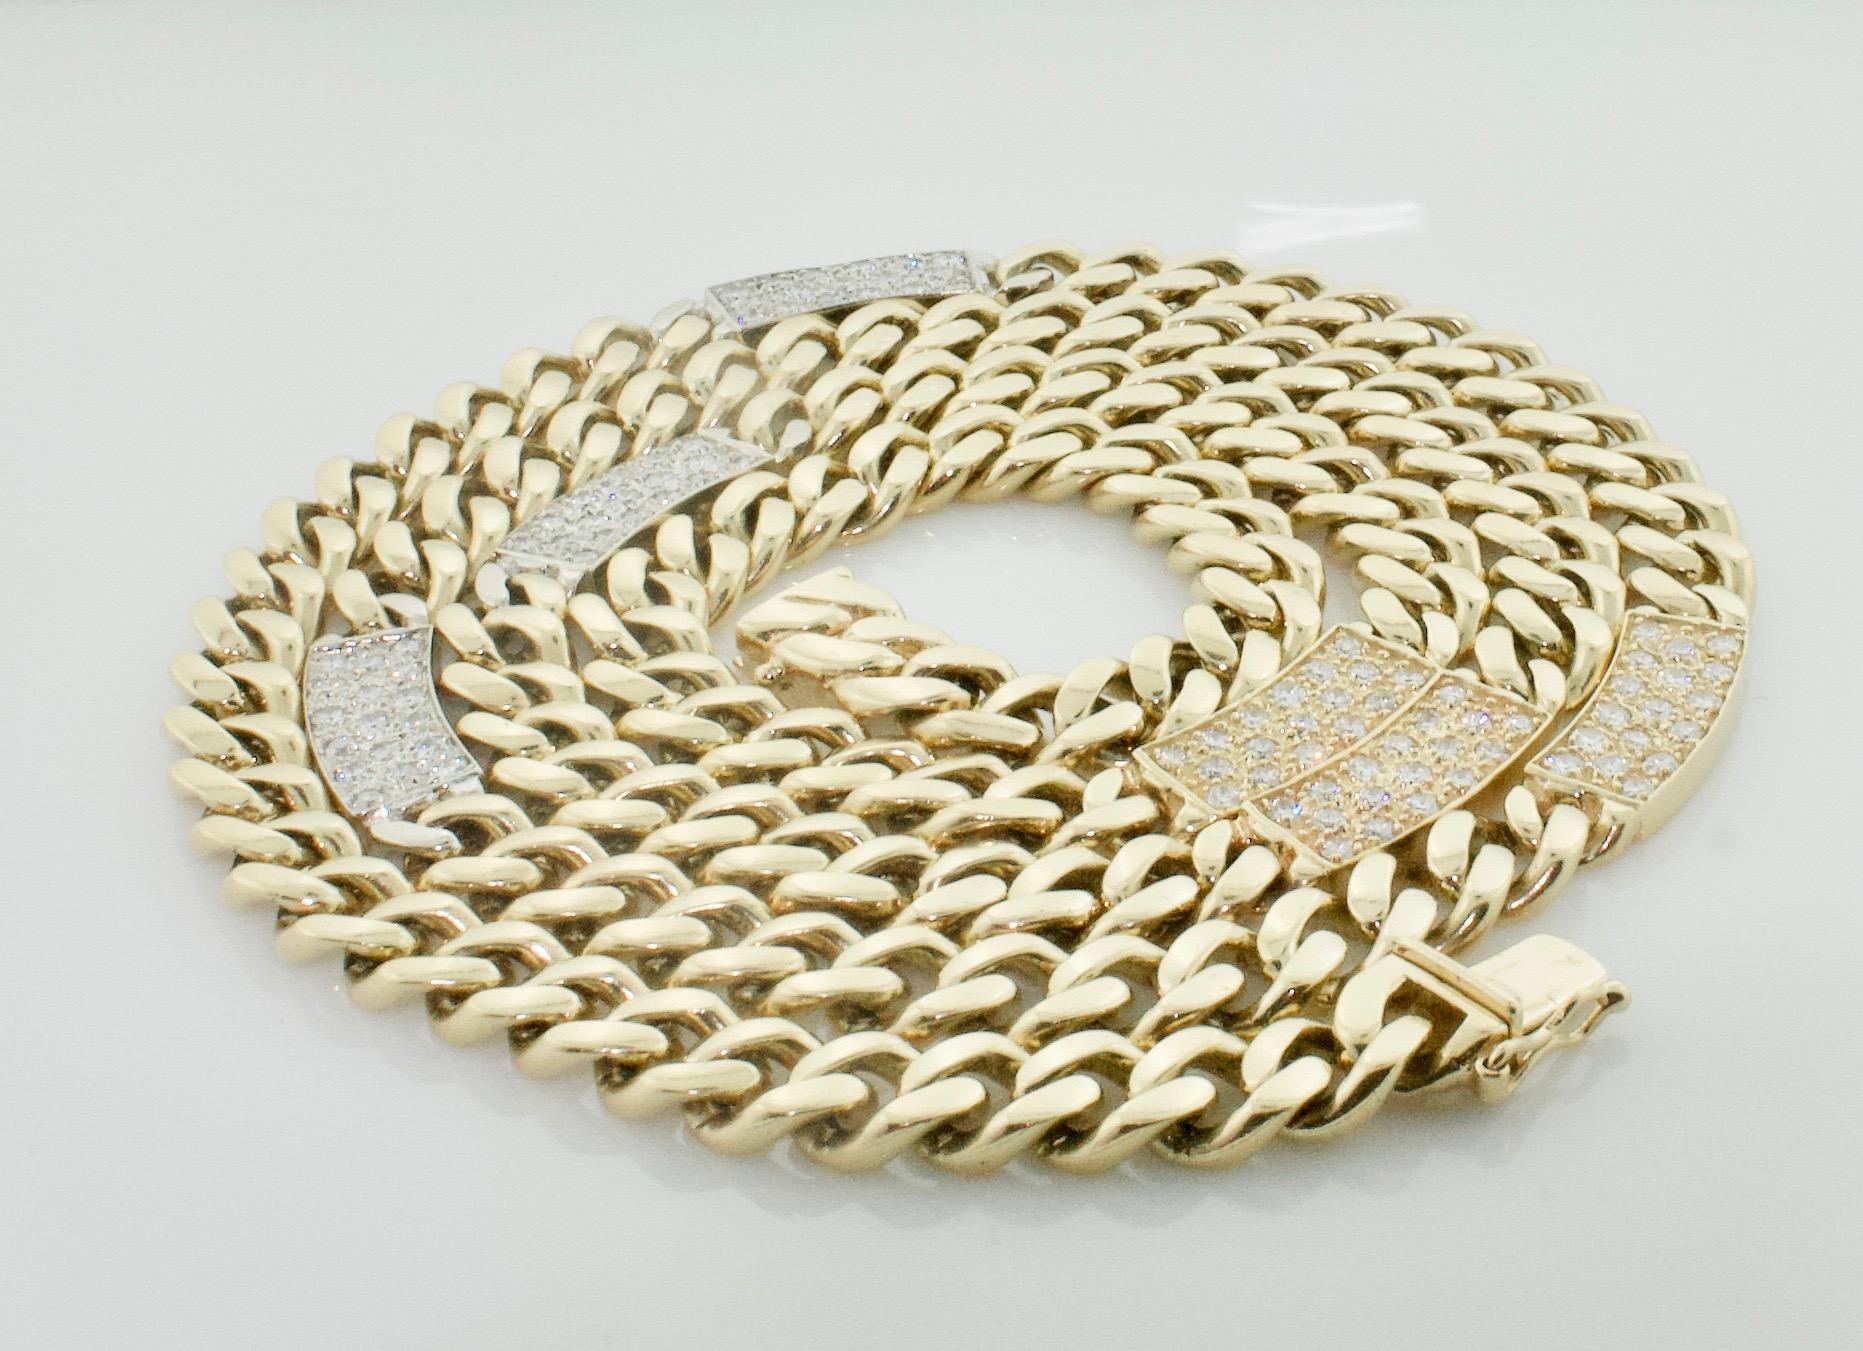 Schwelgen Sie in Opulenz mit unserer exquisiten Heavy Cuban Link Diamond Necklace, einem zeitlosen Meisterwerk, das von den renommierten Kunsthandwerkern von Hammerman and Brothers gefertigt wird. Diese Halskette ist von unvergleichlicher Eleganz